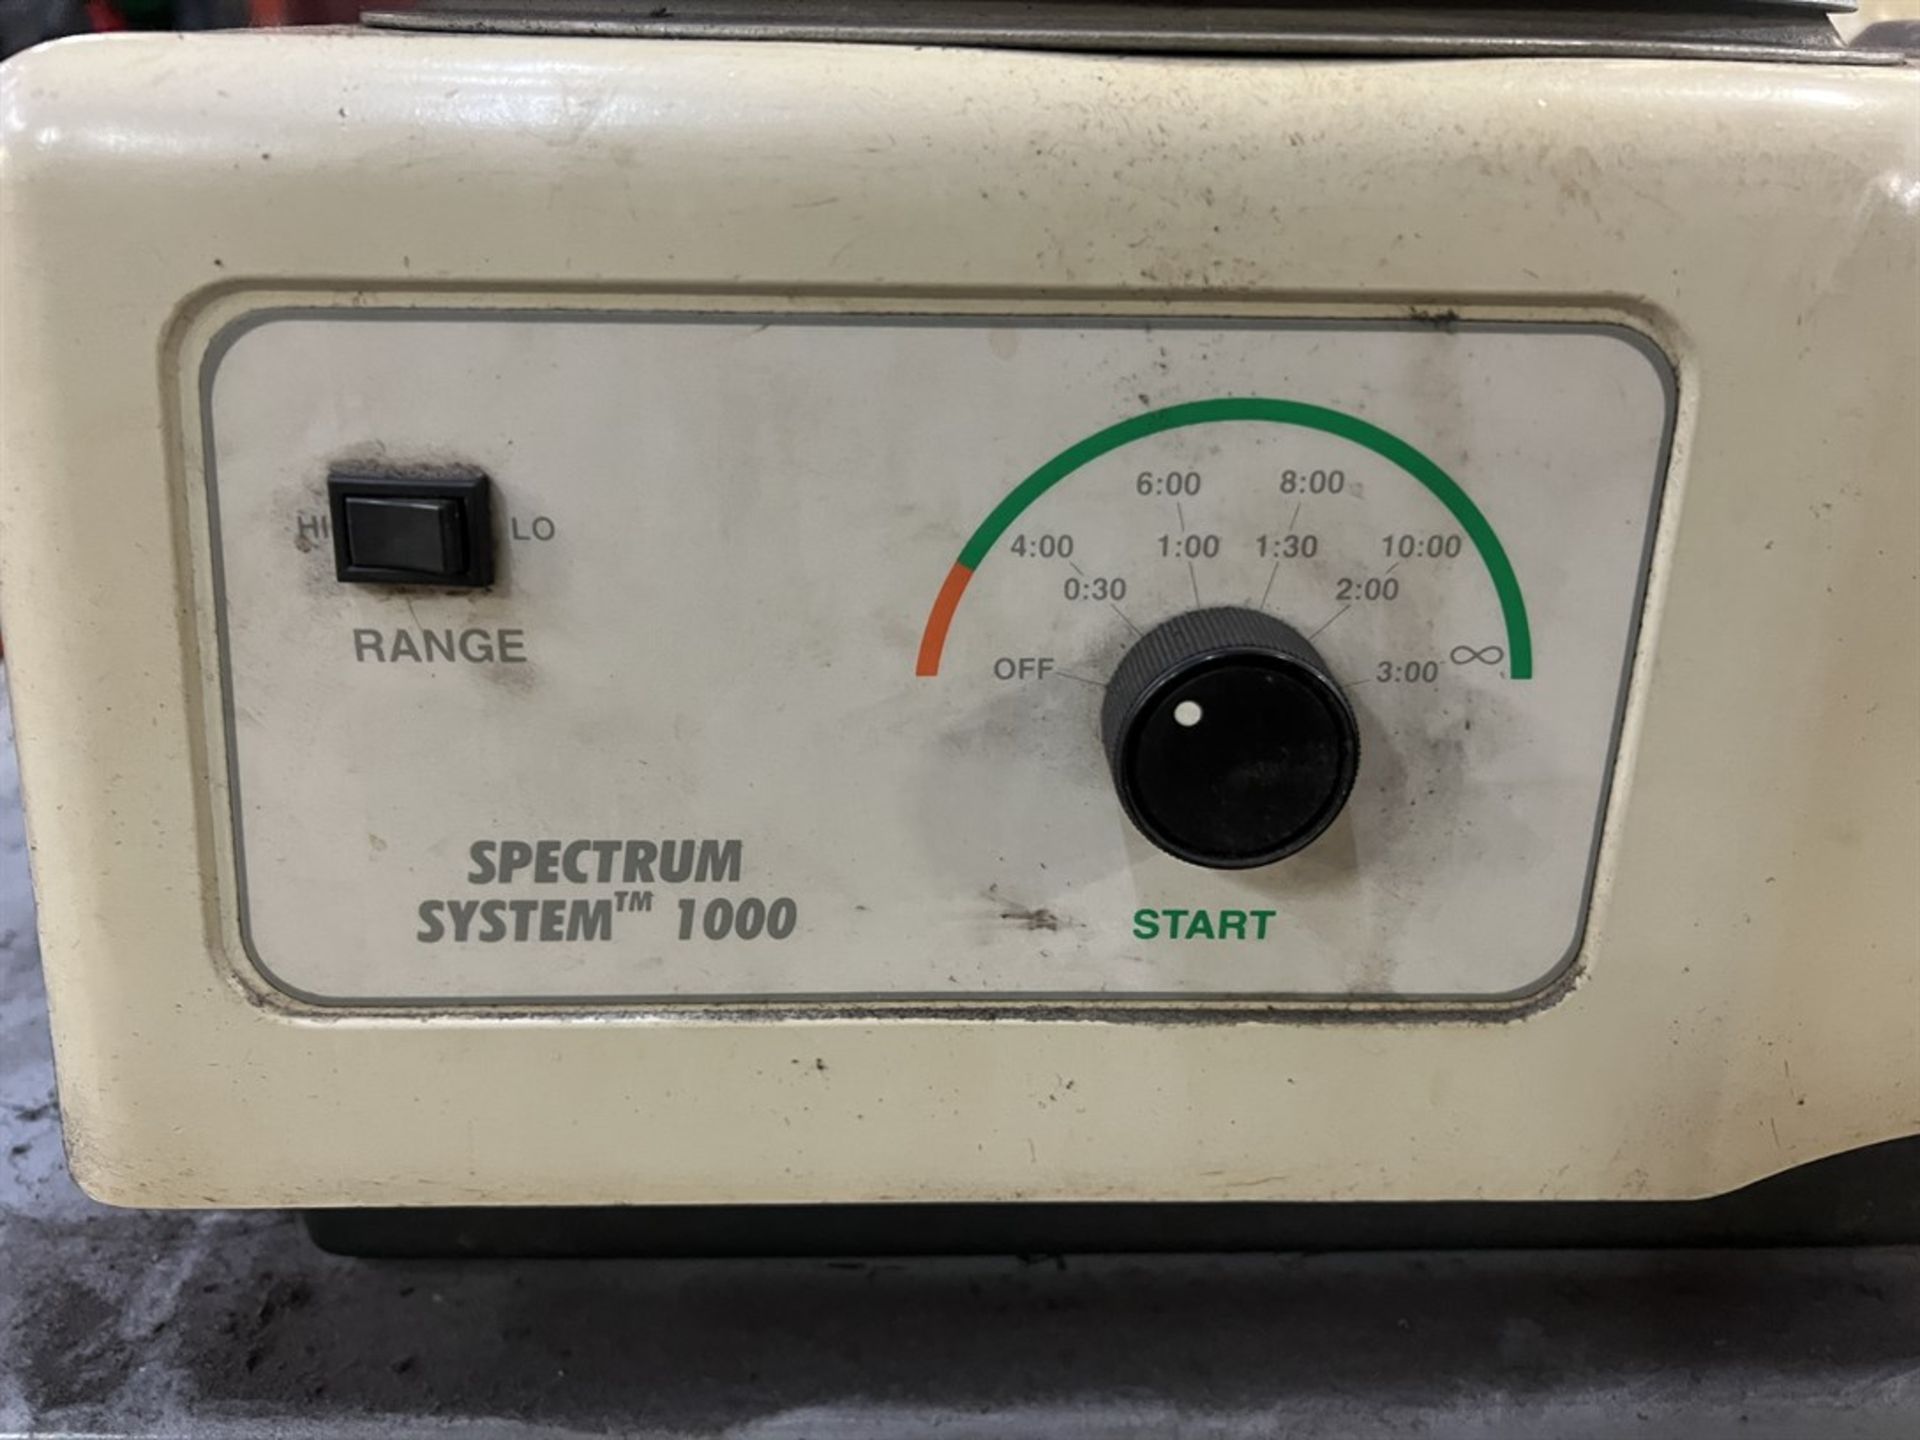 LECO Spectrum System 1000 Grinder/Polisher, s/n 3397 - Image 4 of 5